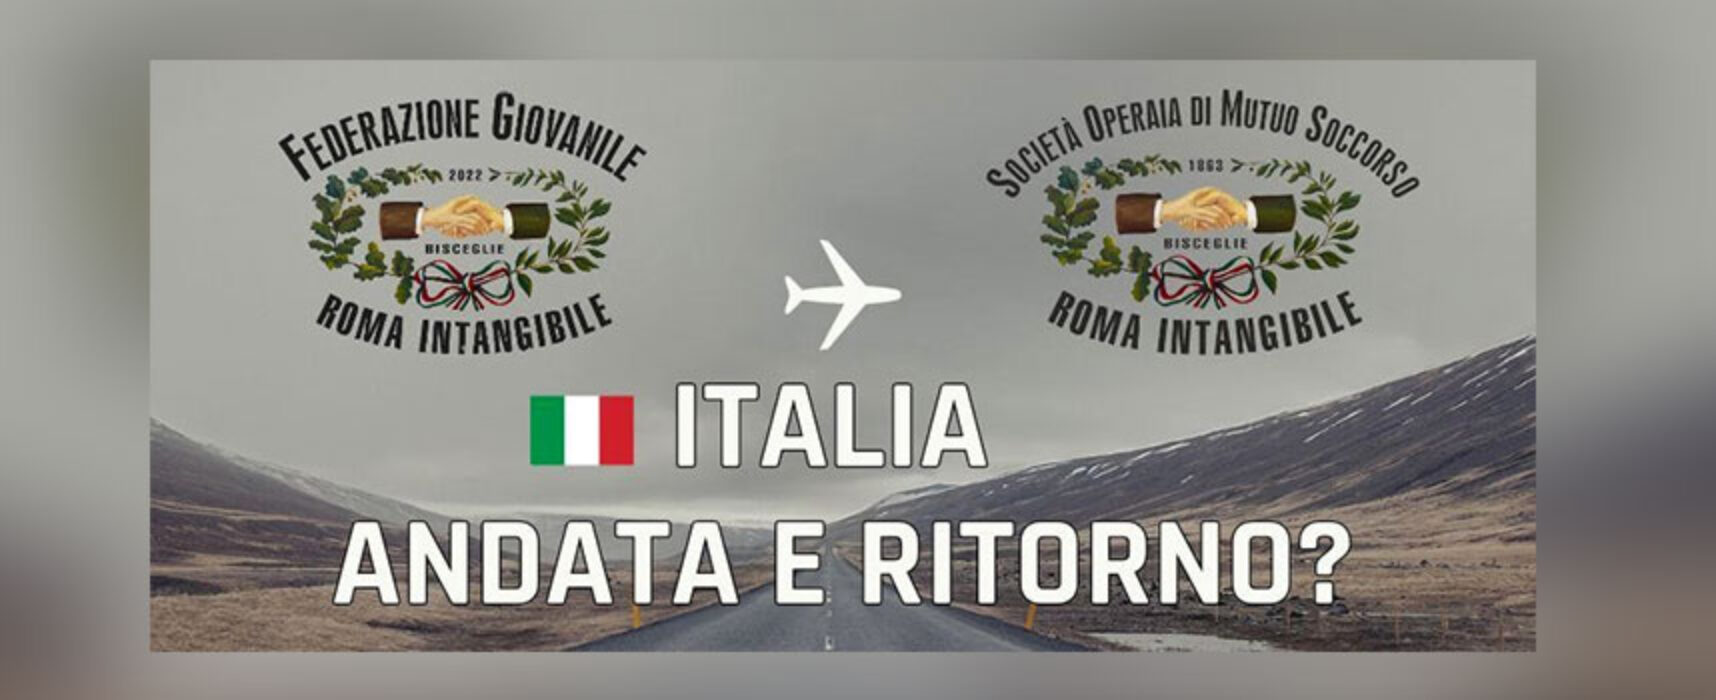 Roma Intangibile ospita convegno “Italia andata e ritorno?”